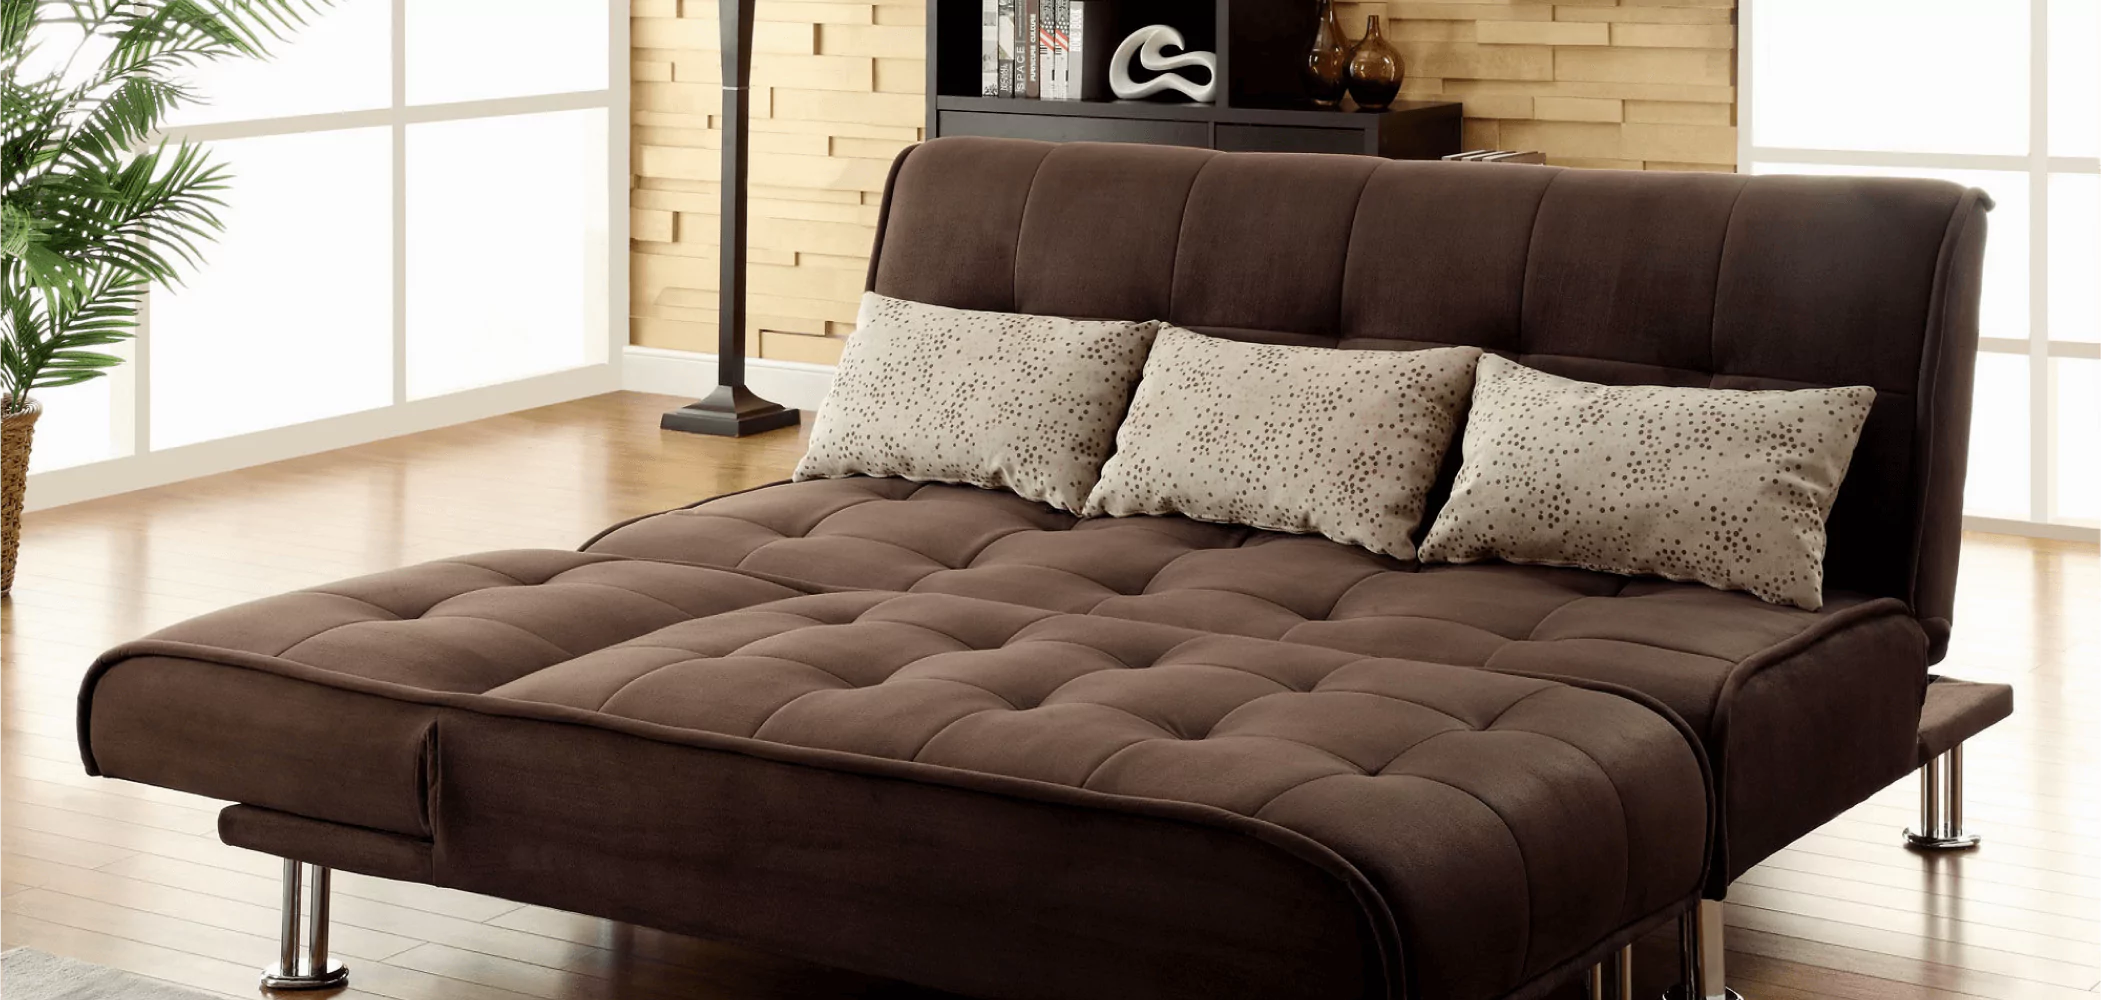 Купить диванчик. Диван Квин сайз. Раскладной диван Sofa Bed. Диван Sectional Sleeper для сна. Раскладной диван Sofa Bed серого цвета IMR-613087.